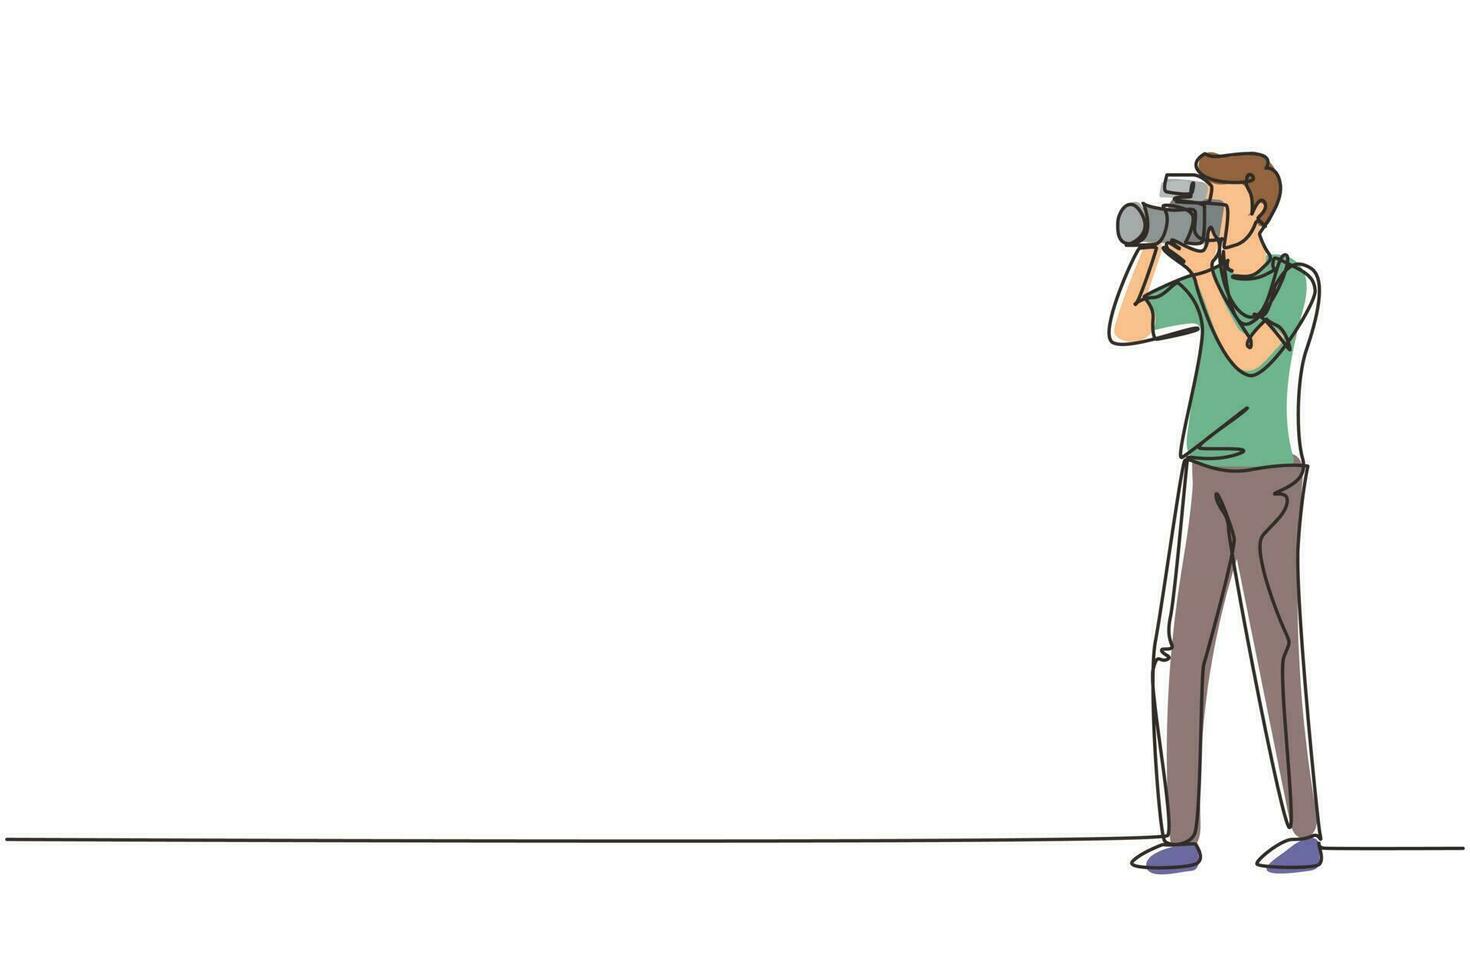 einzelne einzeilige zeichnung glücklicher professioneller fotograf, der fotos mit dslr-kamera macht. junge männliche Charaktere, die mit einer Objektivkamera schießen. moderne grafische vektorillustration des ununterbrochenen zeichnendesigns vektor